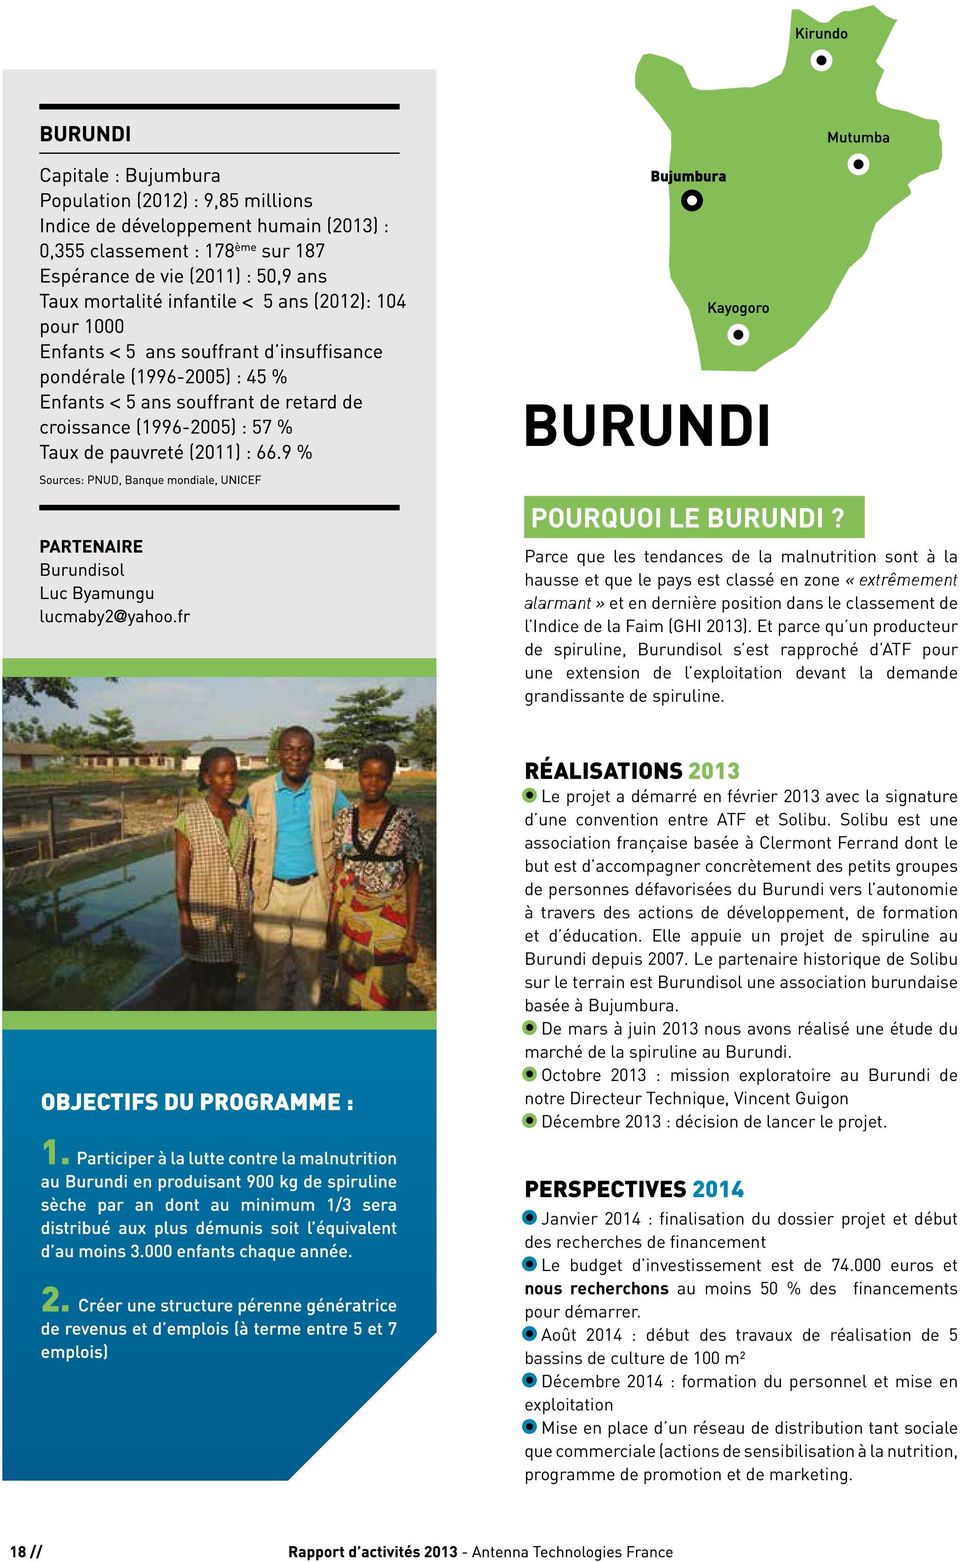 Et parce qu un producteur de spiruline, Burundisol s est rapproché d ATF pour une extension de l exploitation devant la demande grandissante de spiruline.